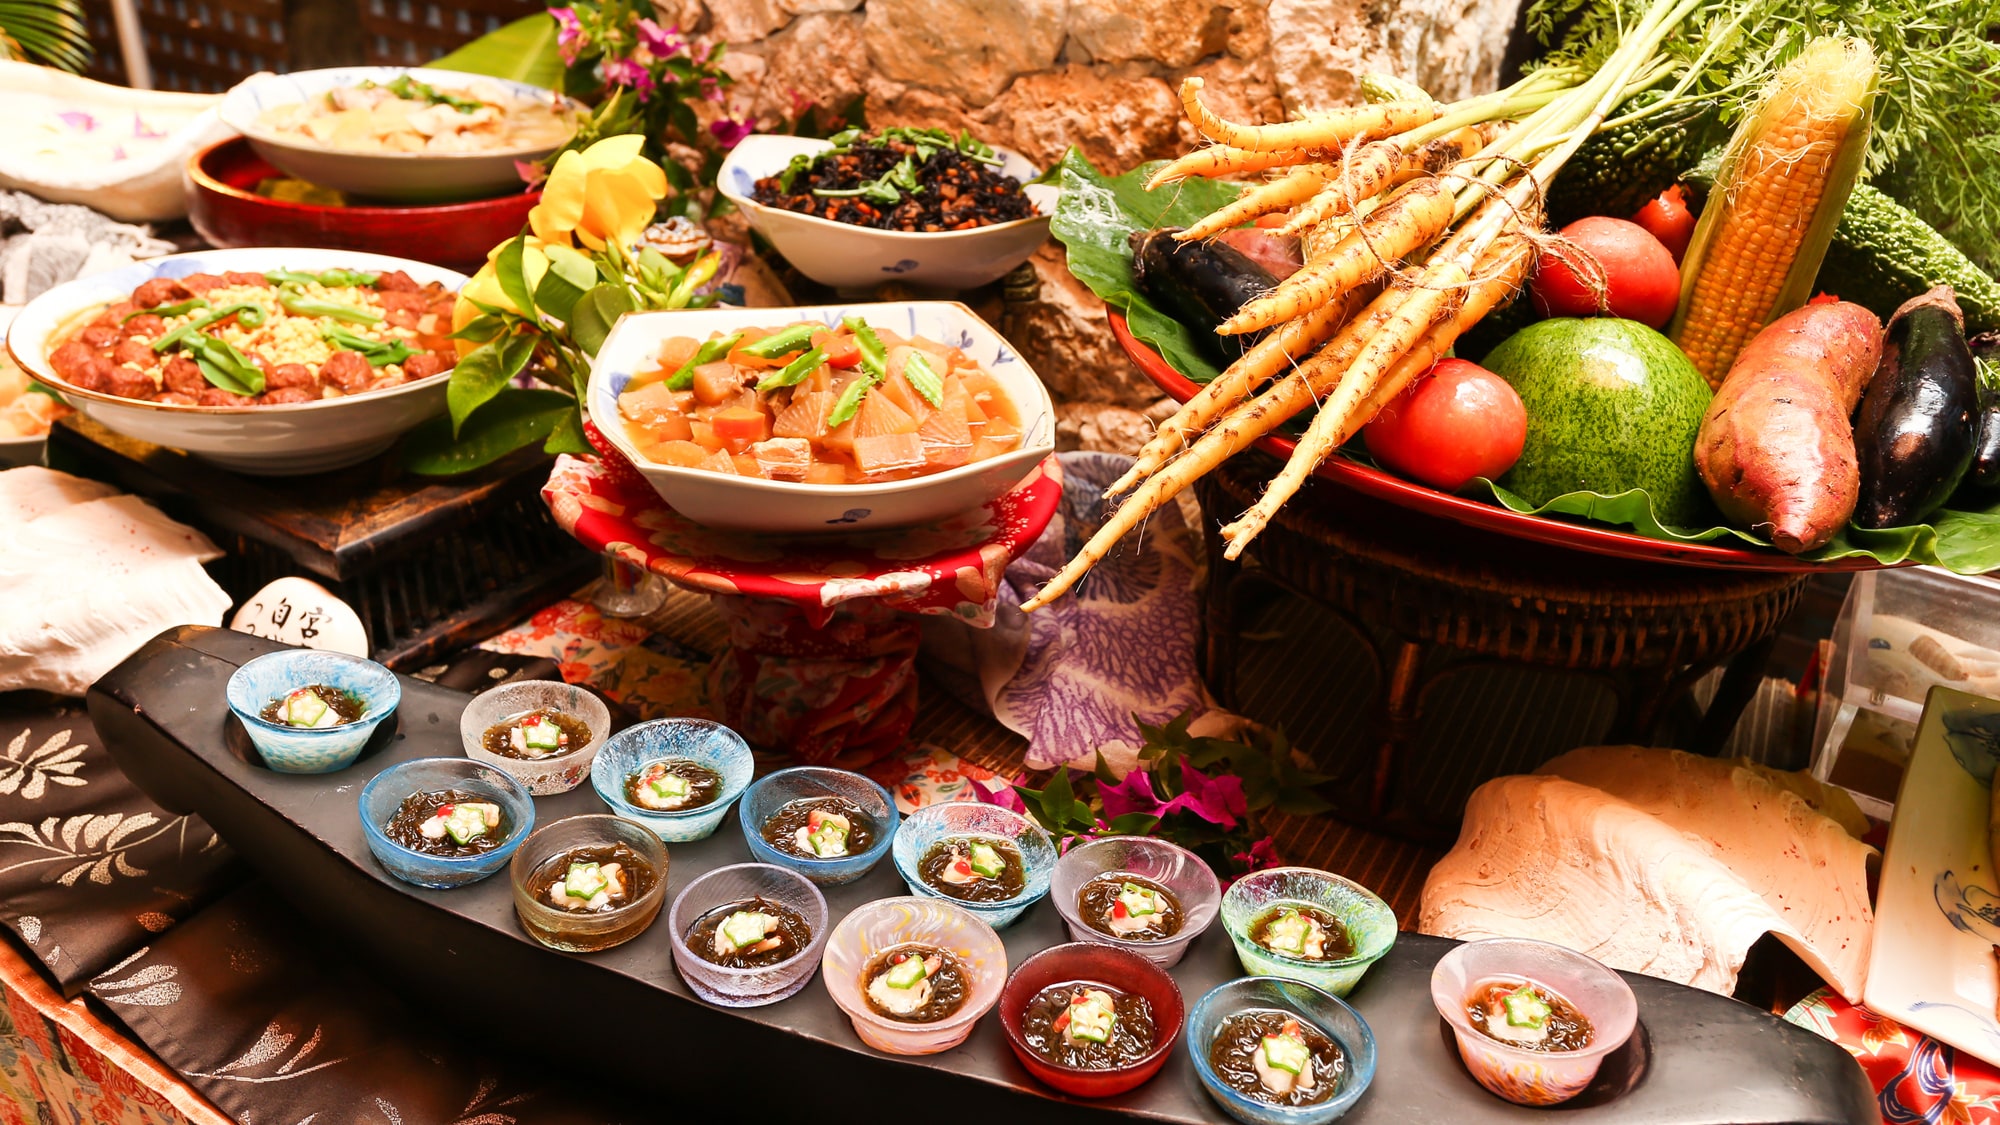 [Restoran di fasilitas / kreasi Maralunga Jepang dan Ryukyu] Sarapan disajikan dalam gaya prasmanan dengan masakan Jepang, Barat, dan Ryukyu.